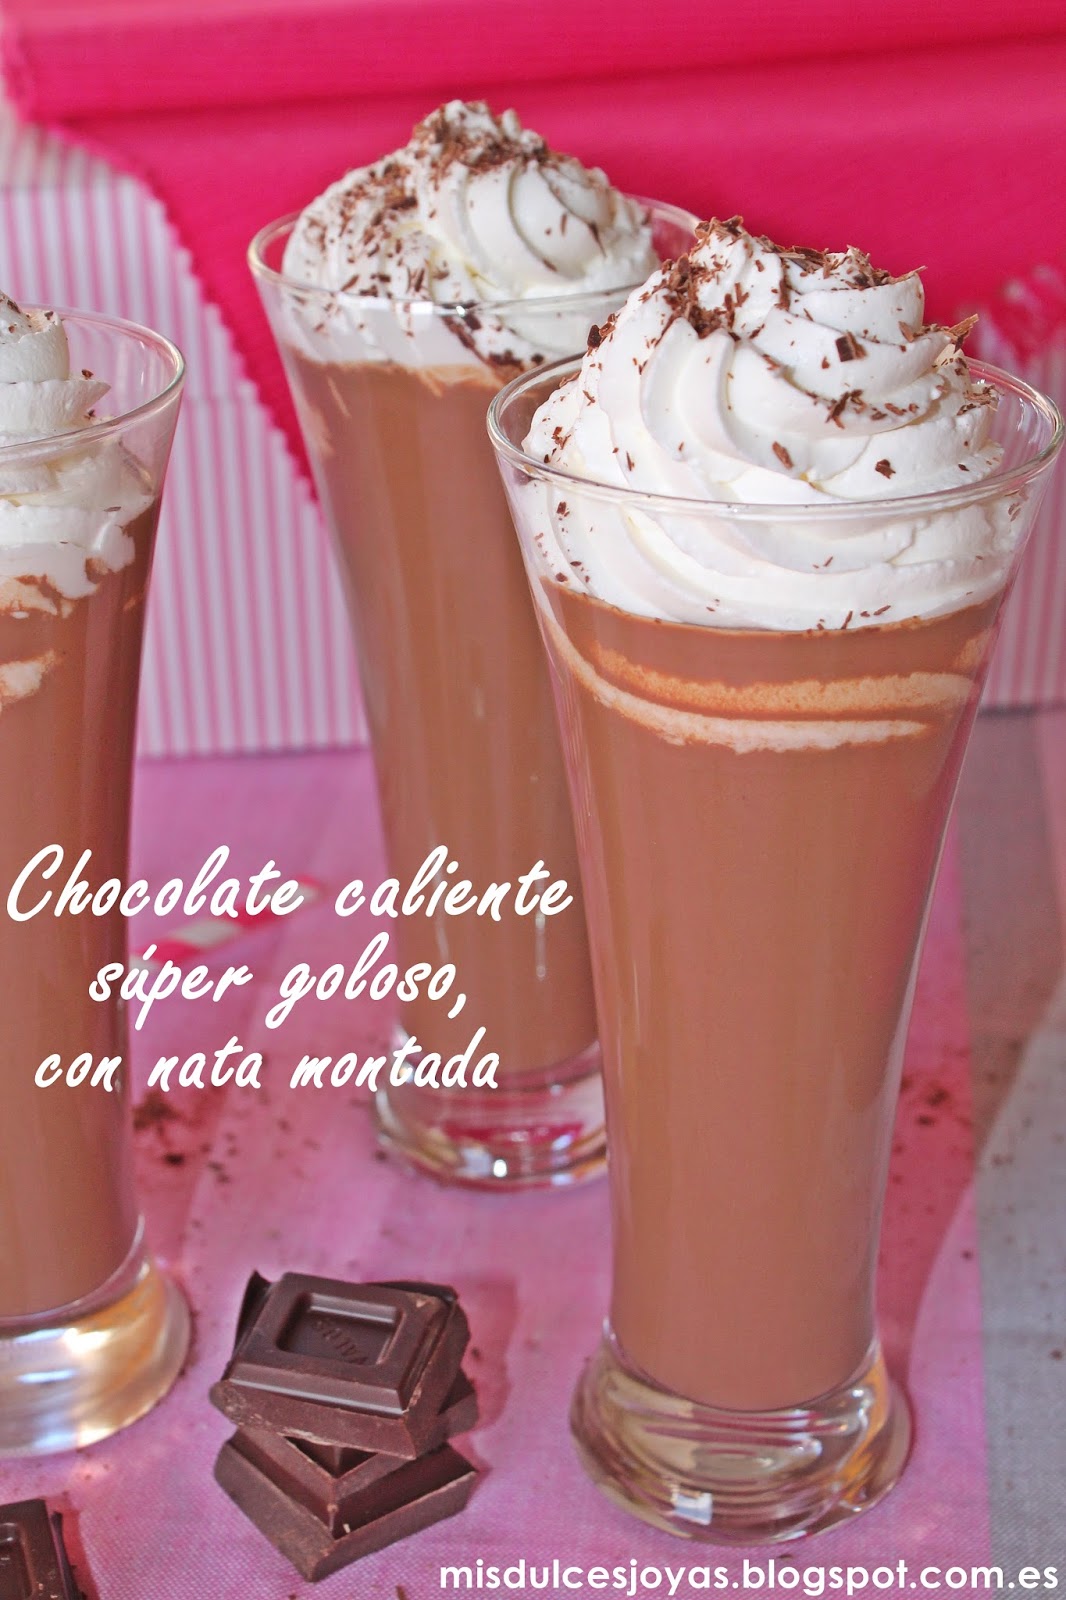 Chocolate Caliente Súper Goloso, Con Nata Montada
